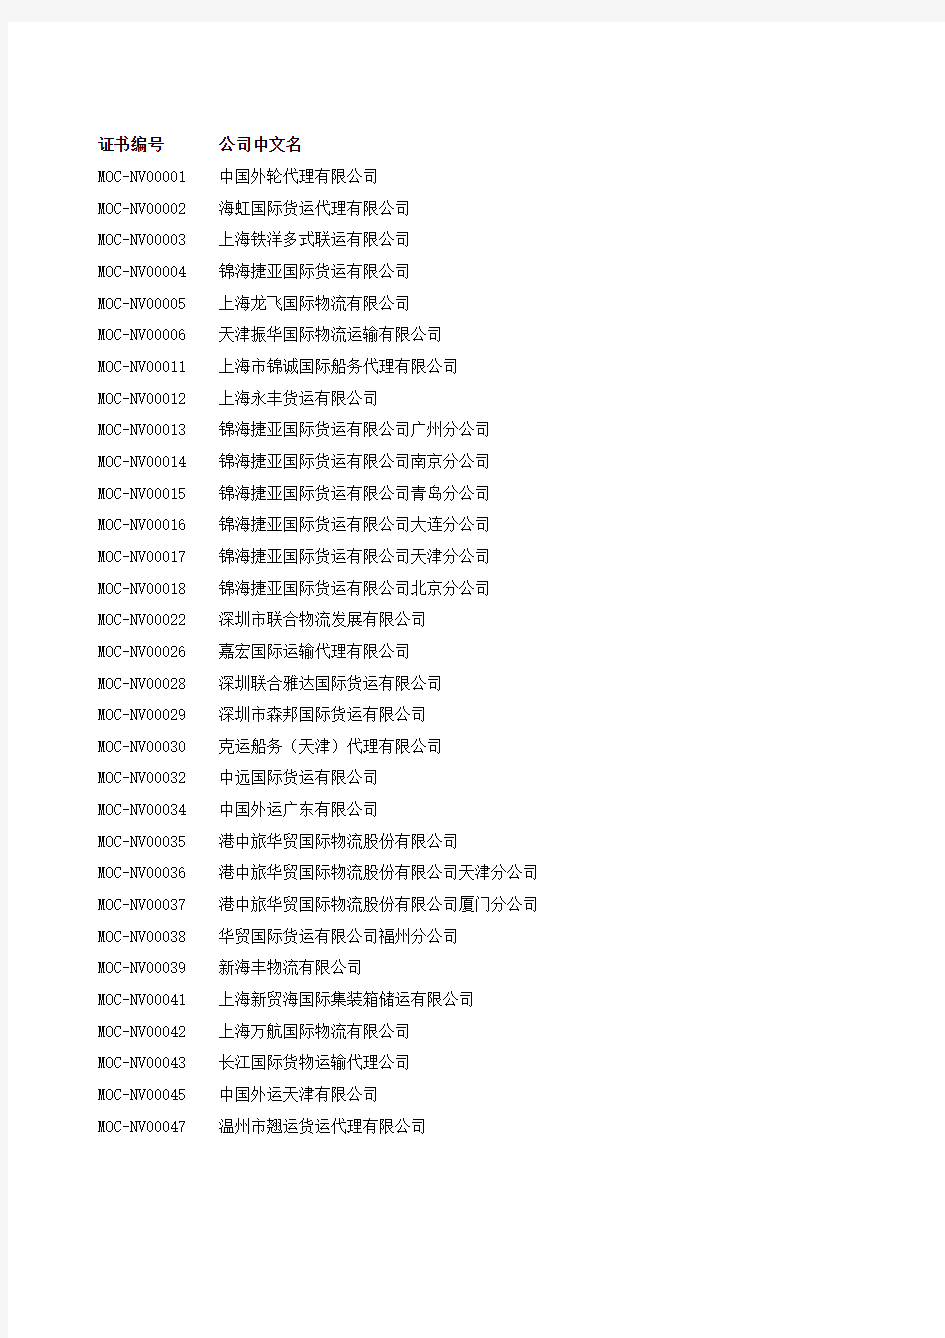 无船承运业务经营者名单(截止2014年5月9日)